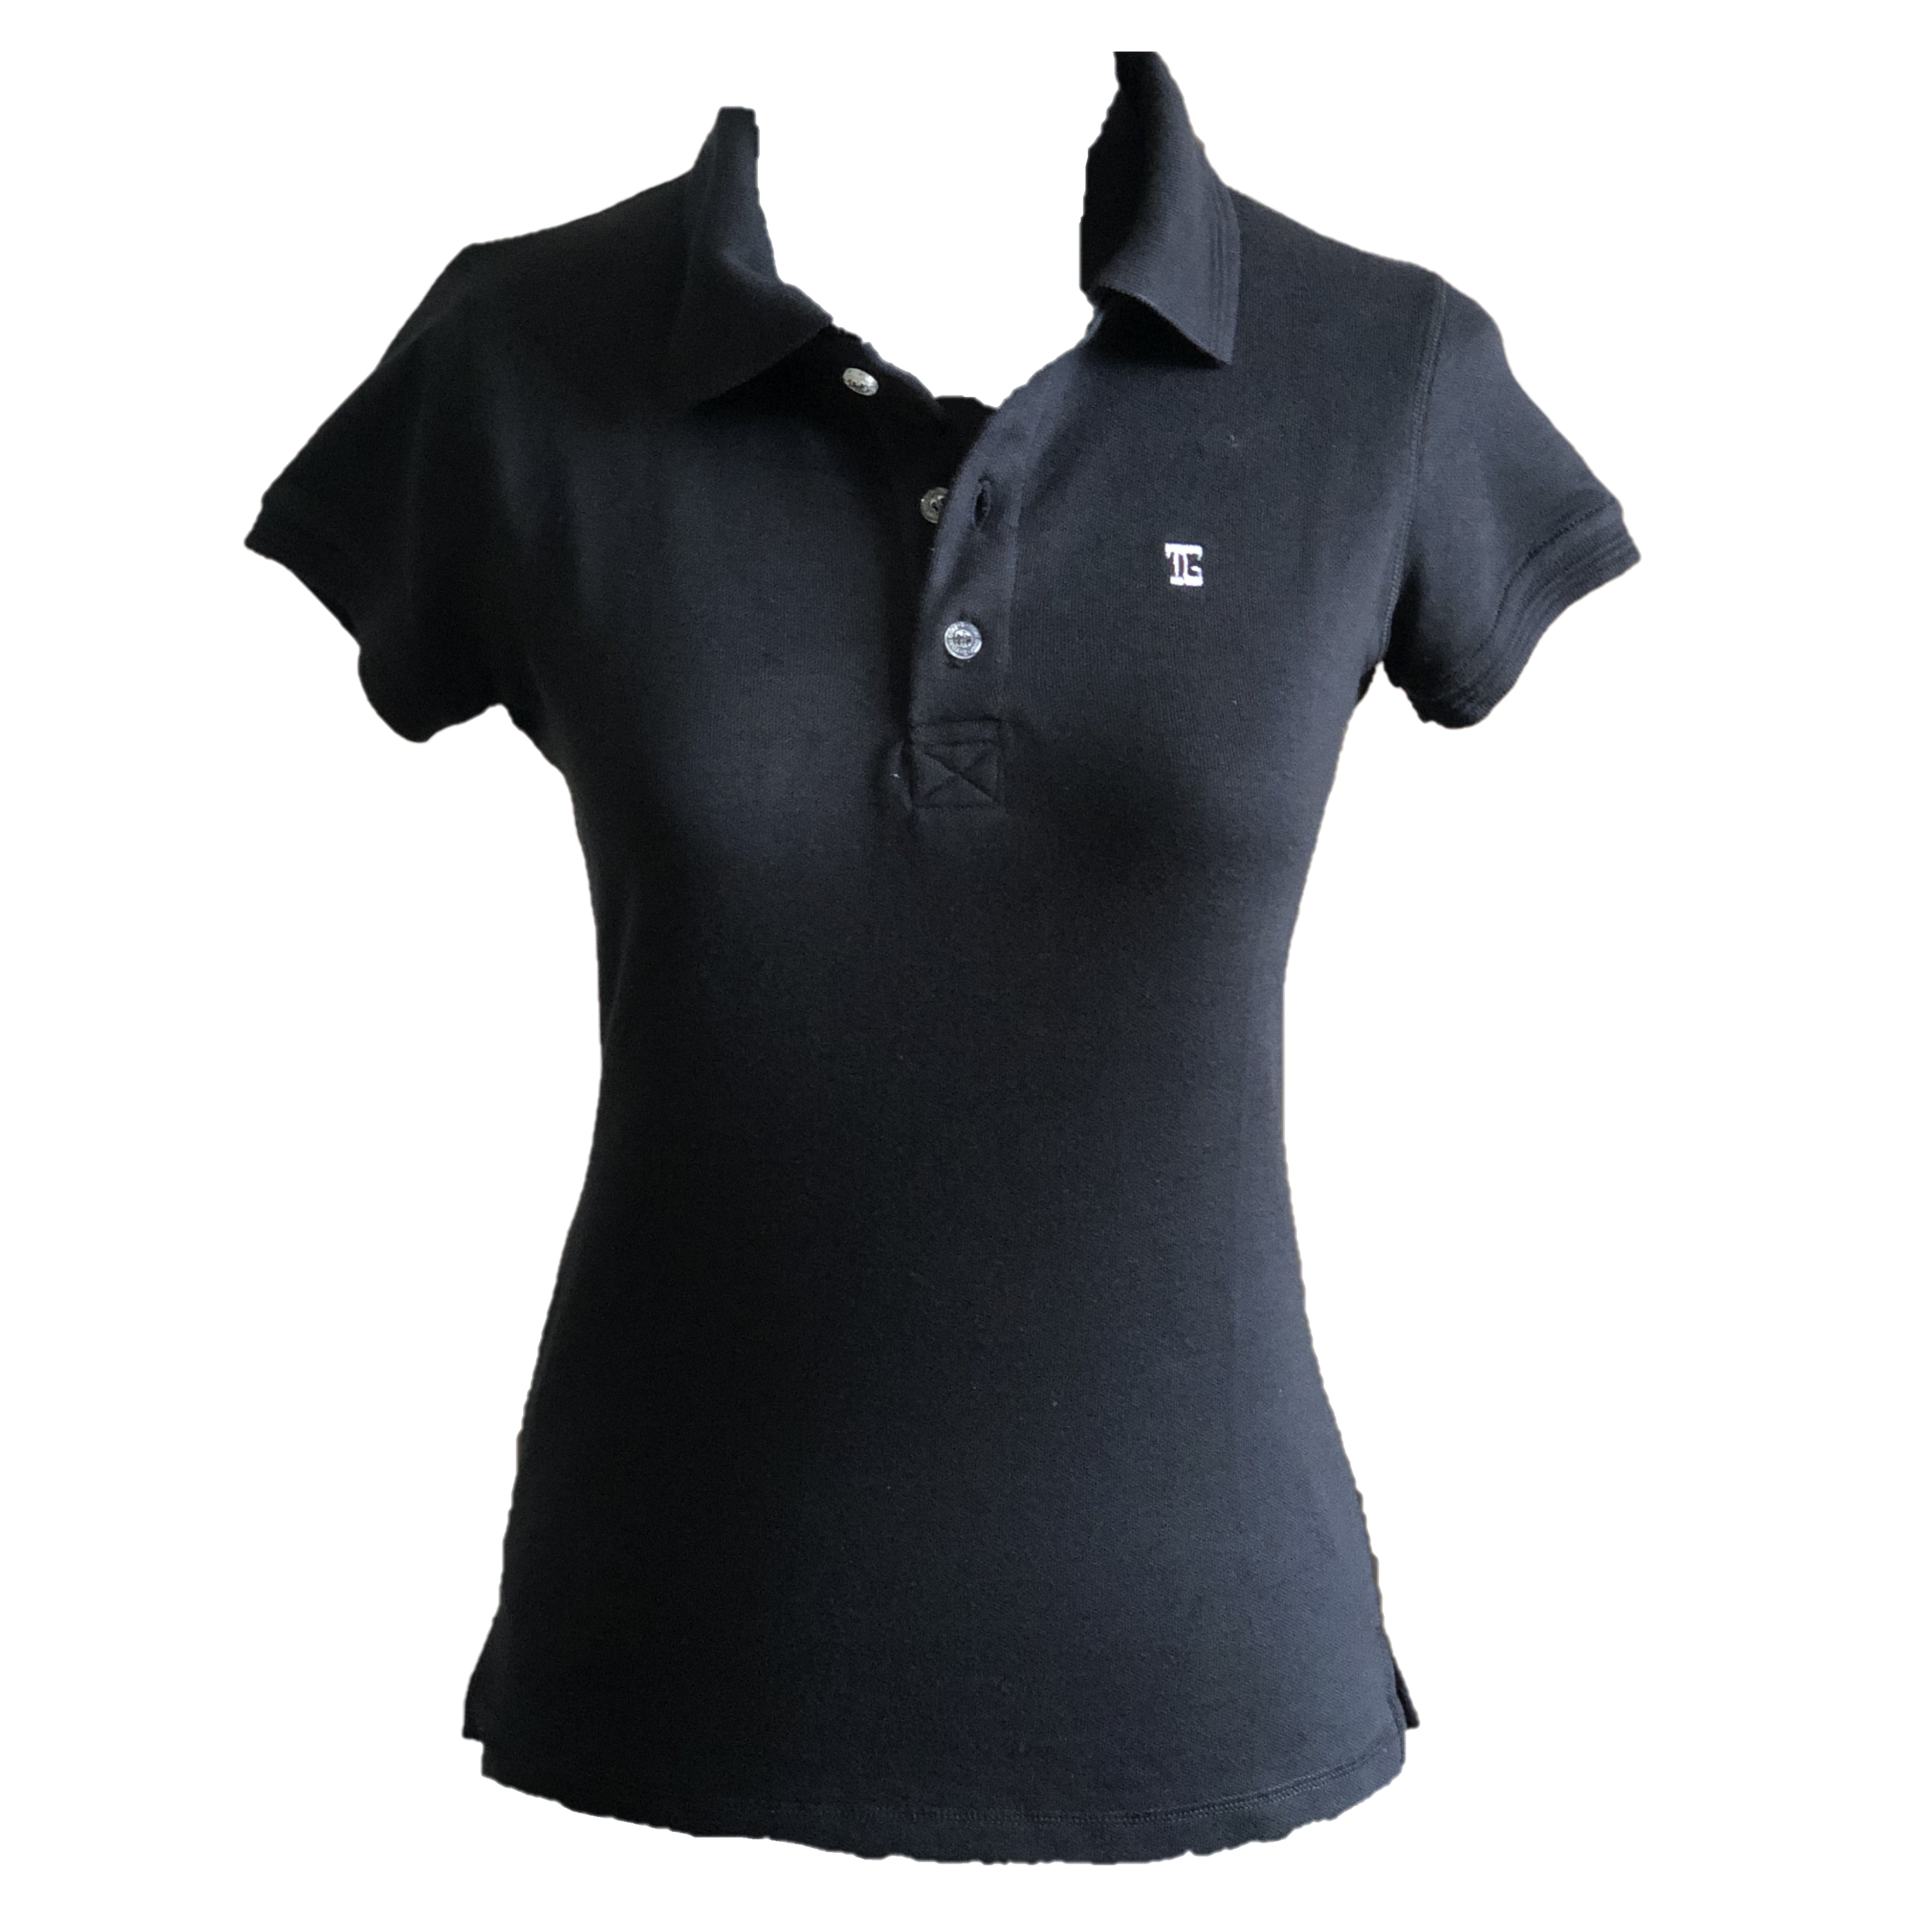 LT-105A || Ladies Top Black Short Sleeve  Textured Cloth One Concealed Side Seam Pocket Featured Overlocked Shoulder V Saddle